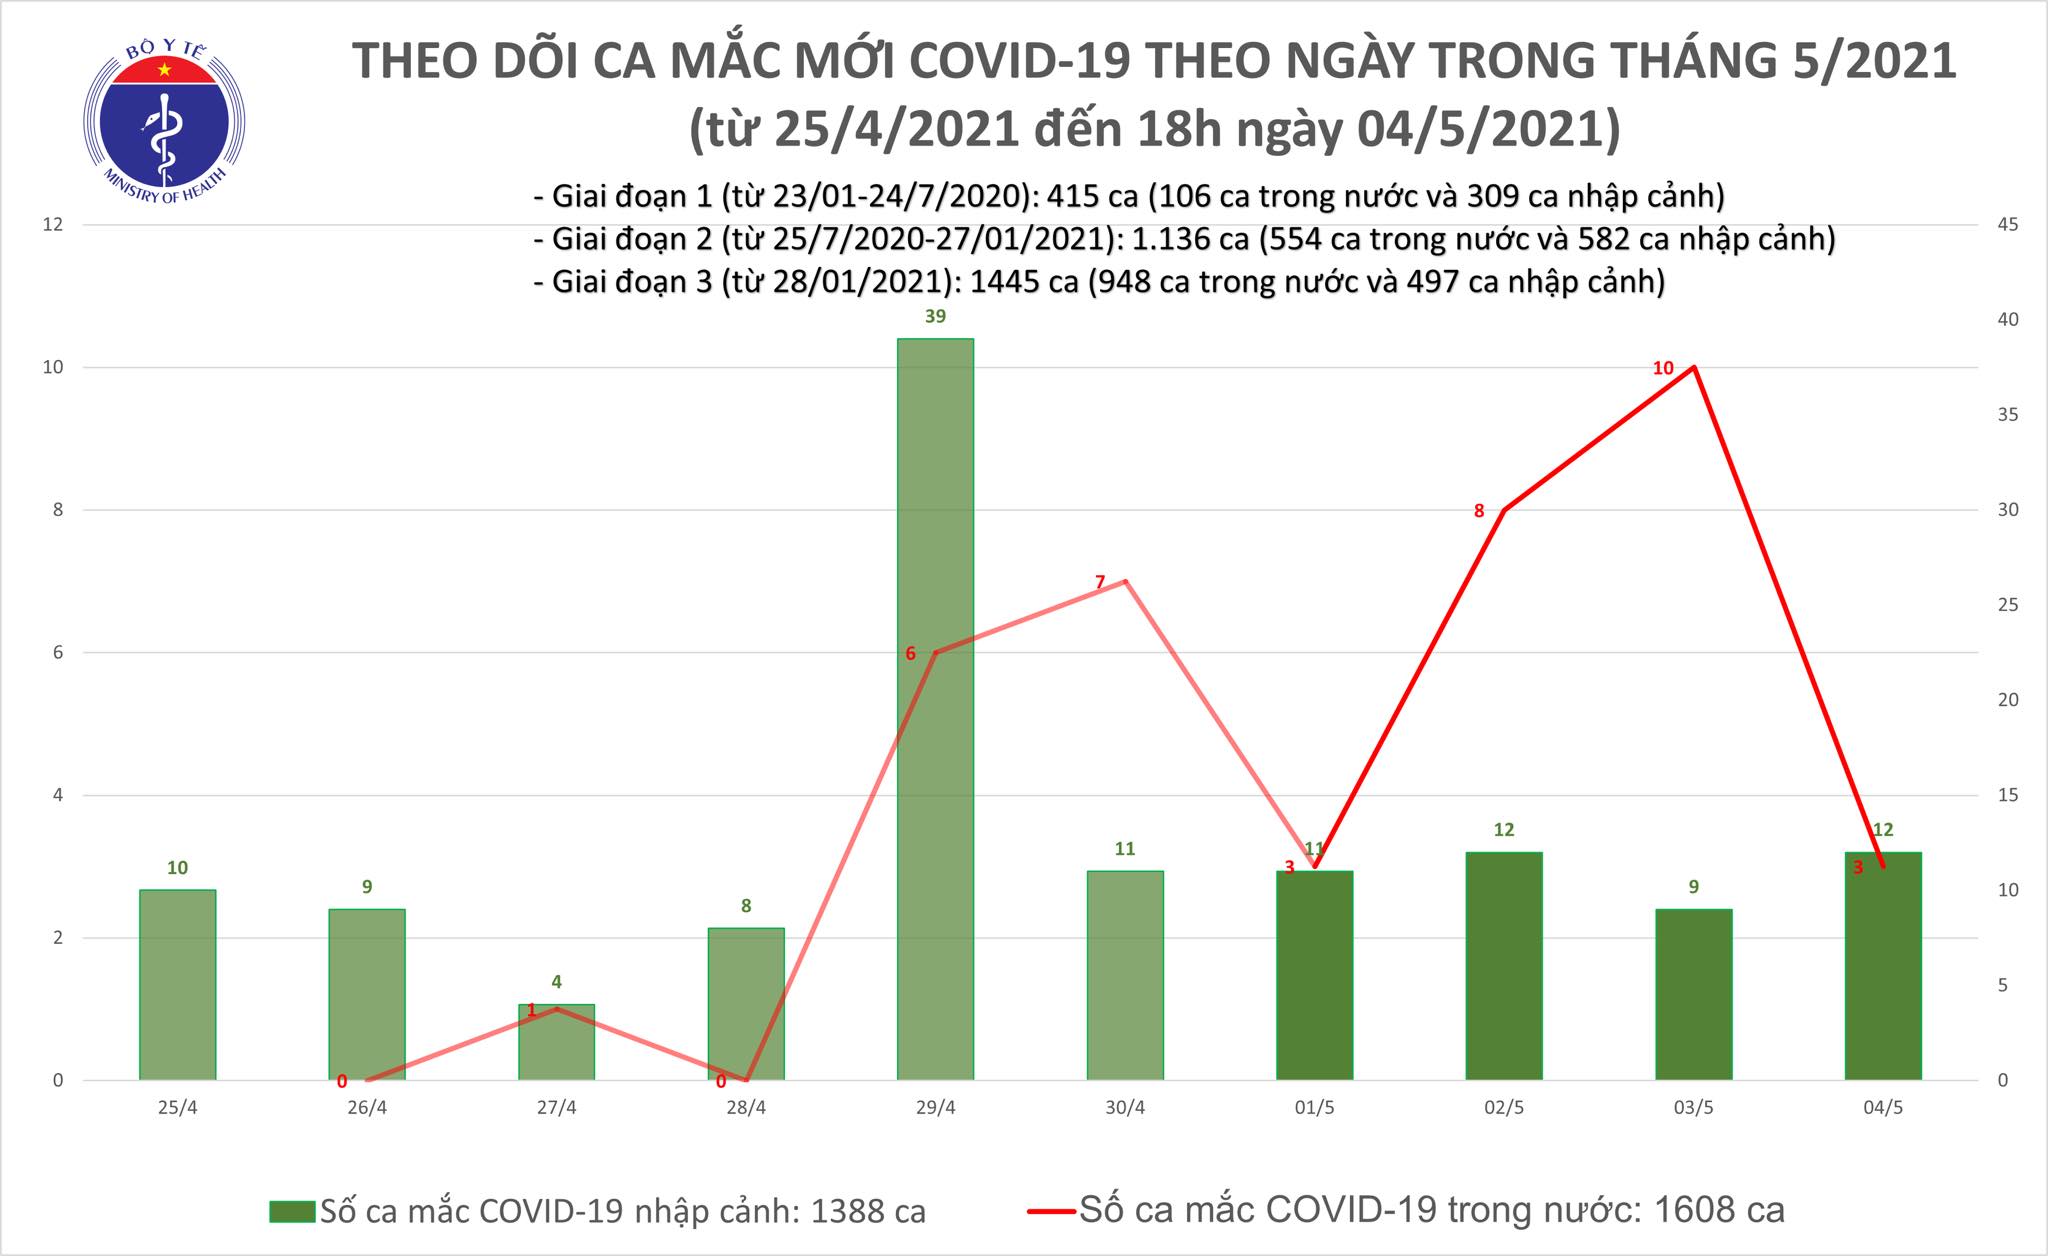 Chiều 4/5: Thêm 11 ca mắc COVID-19, có 1 ca trong nước tại Đà Nẵng